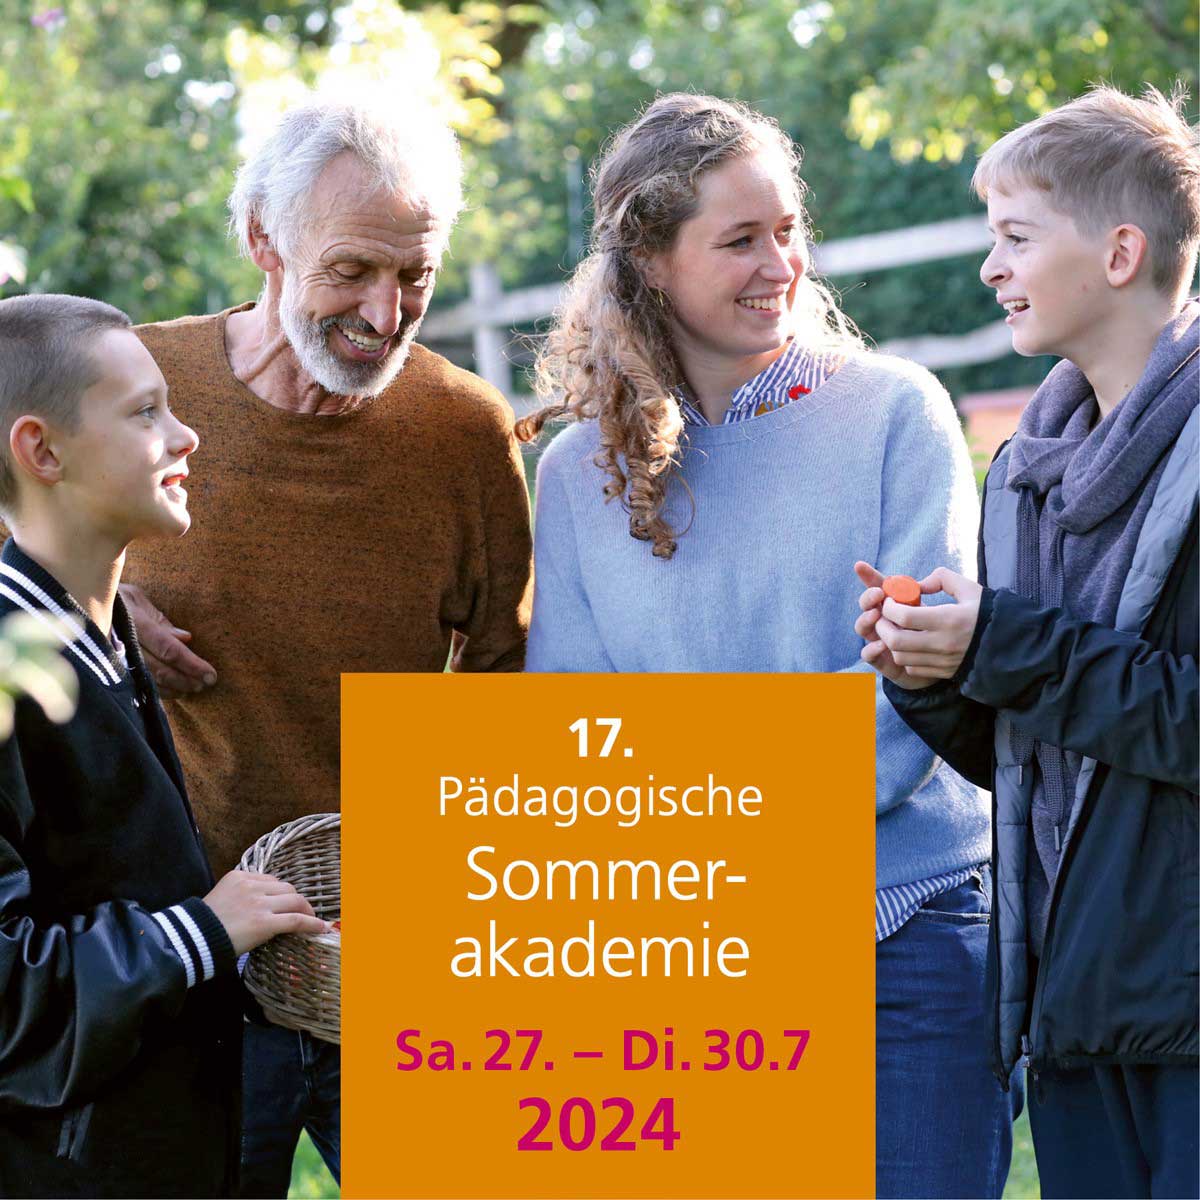 Pädagogische Sommerakademie 2024